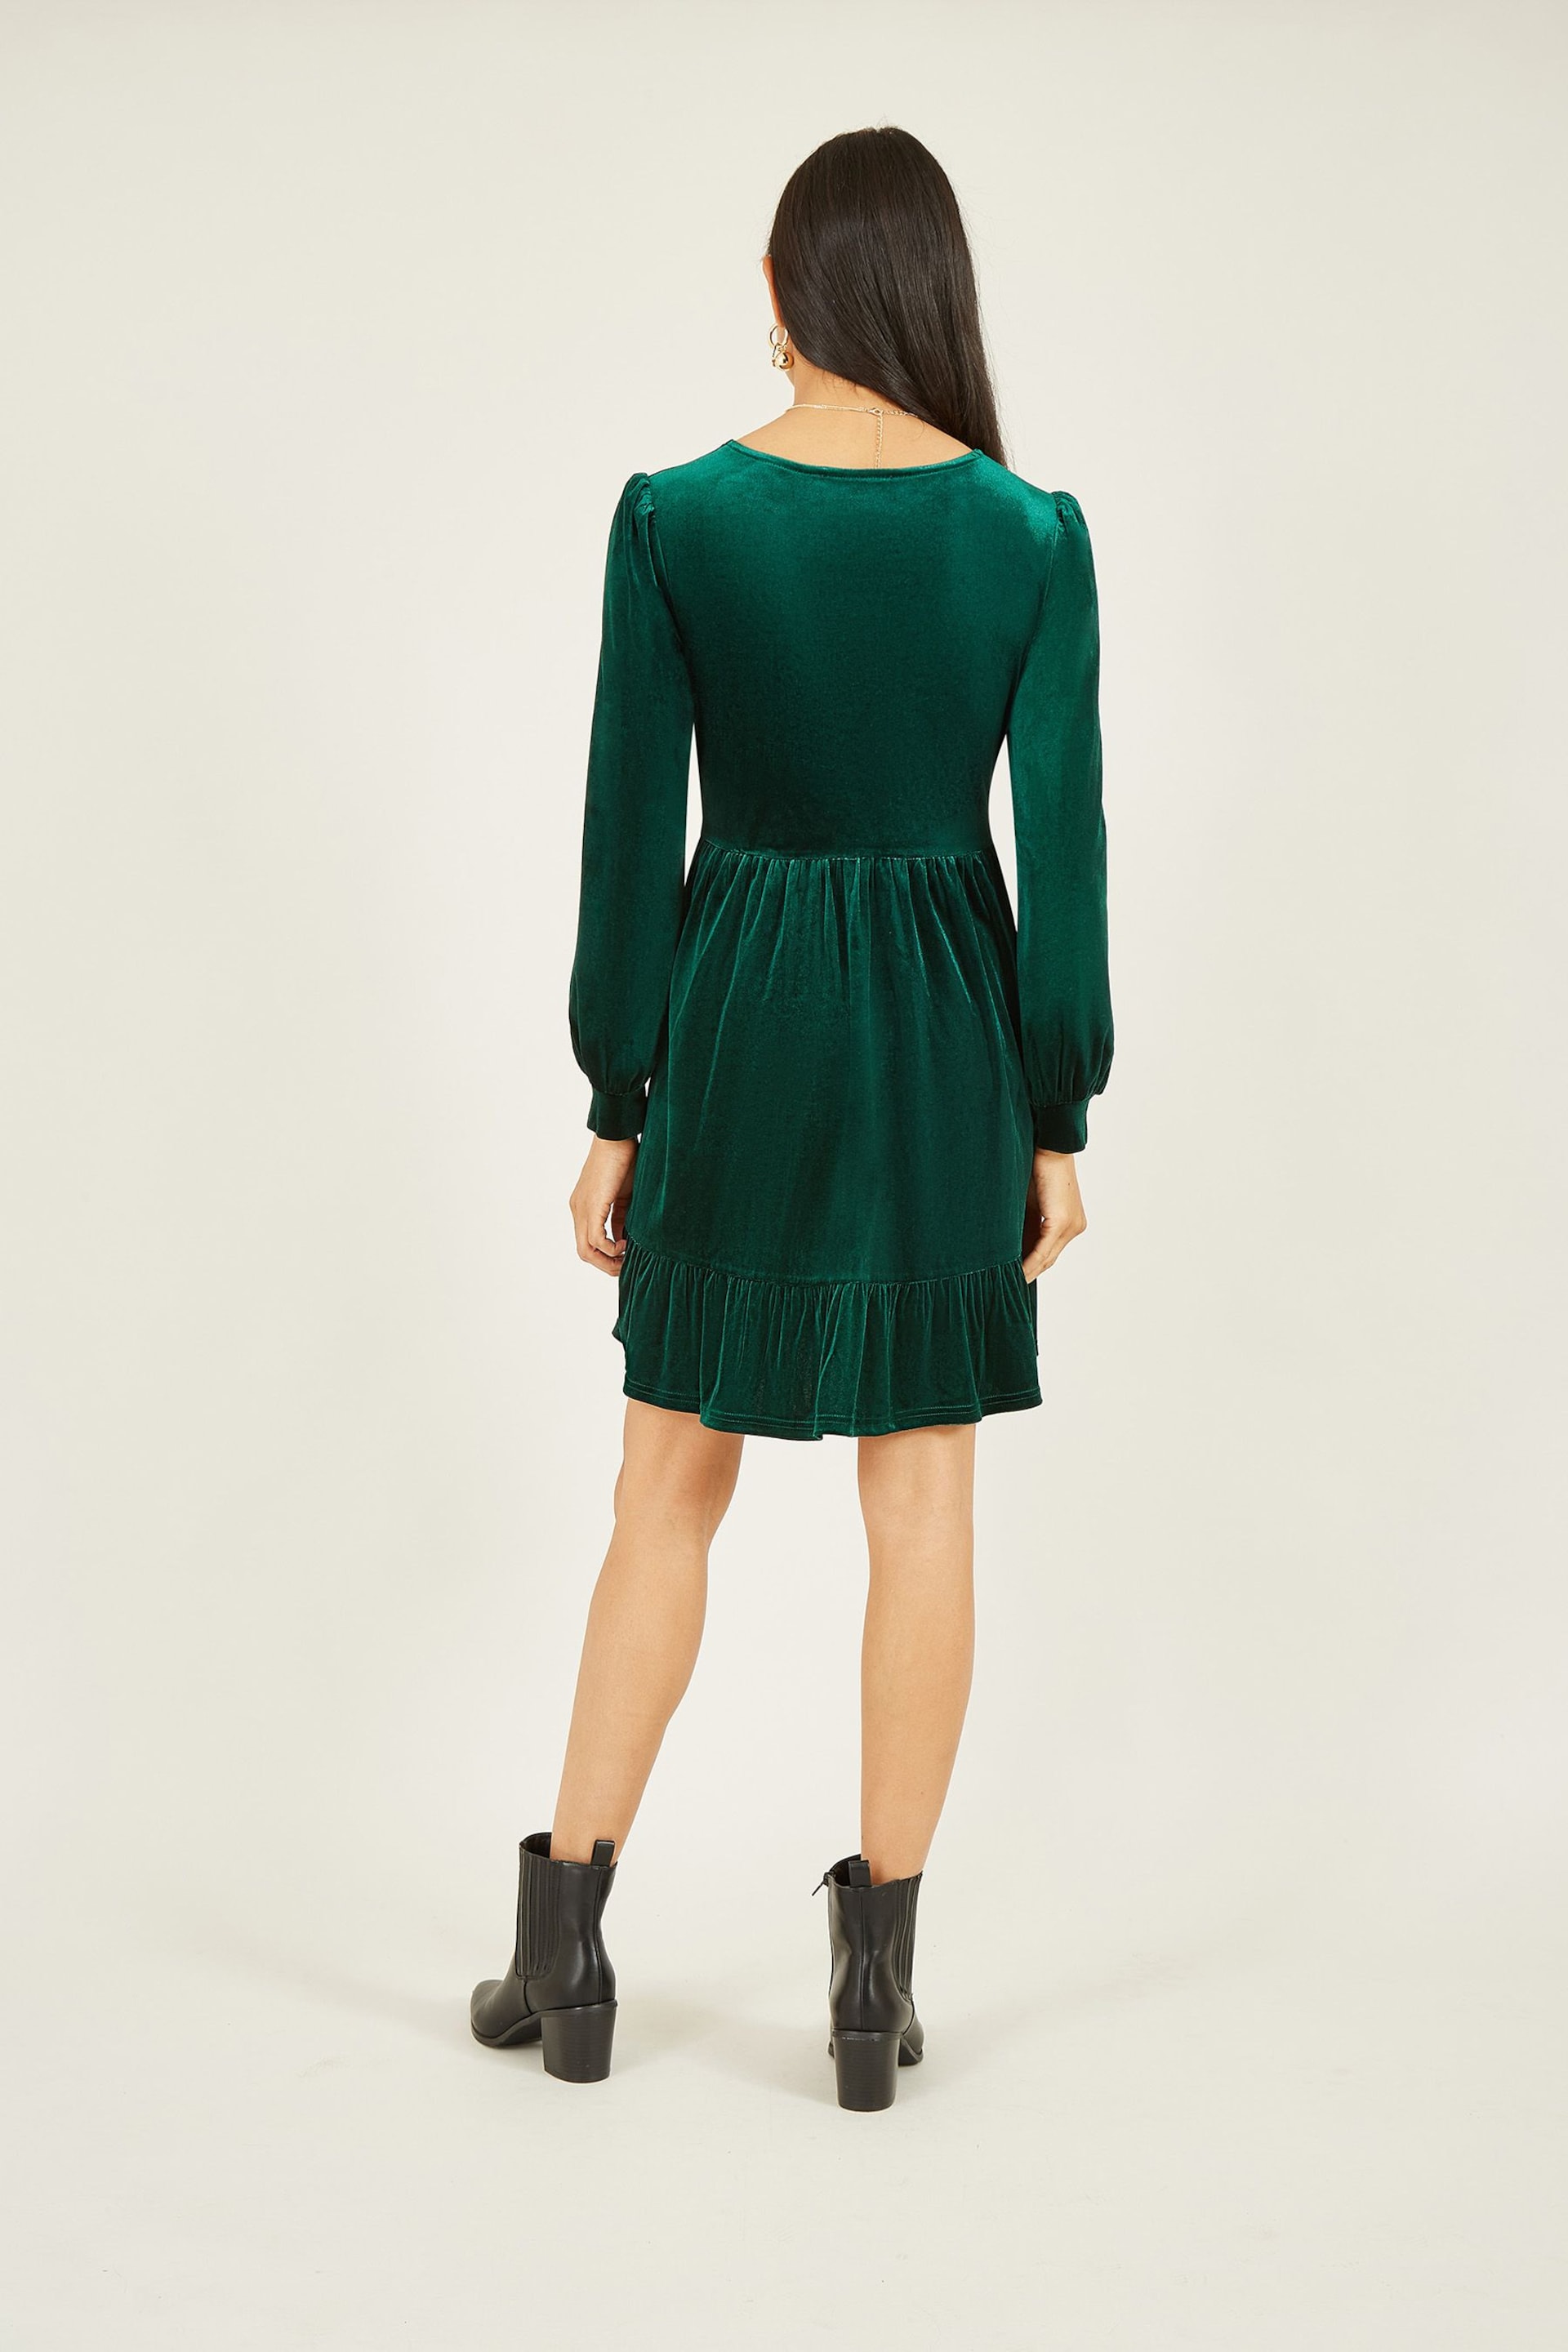 Mela Green Velvet Long Sleeve Skater Dress - Image 2 of 5